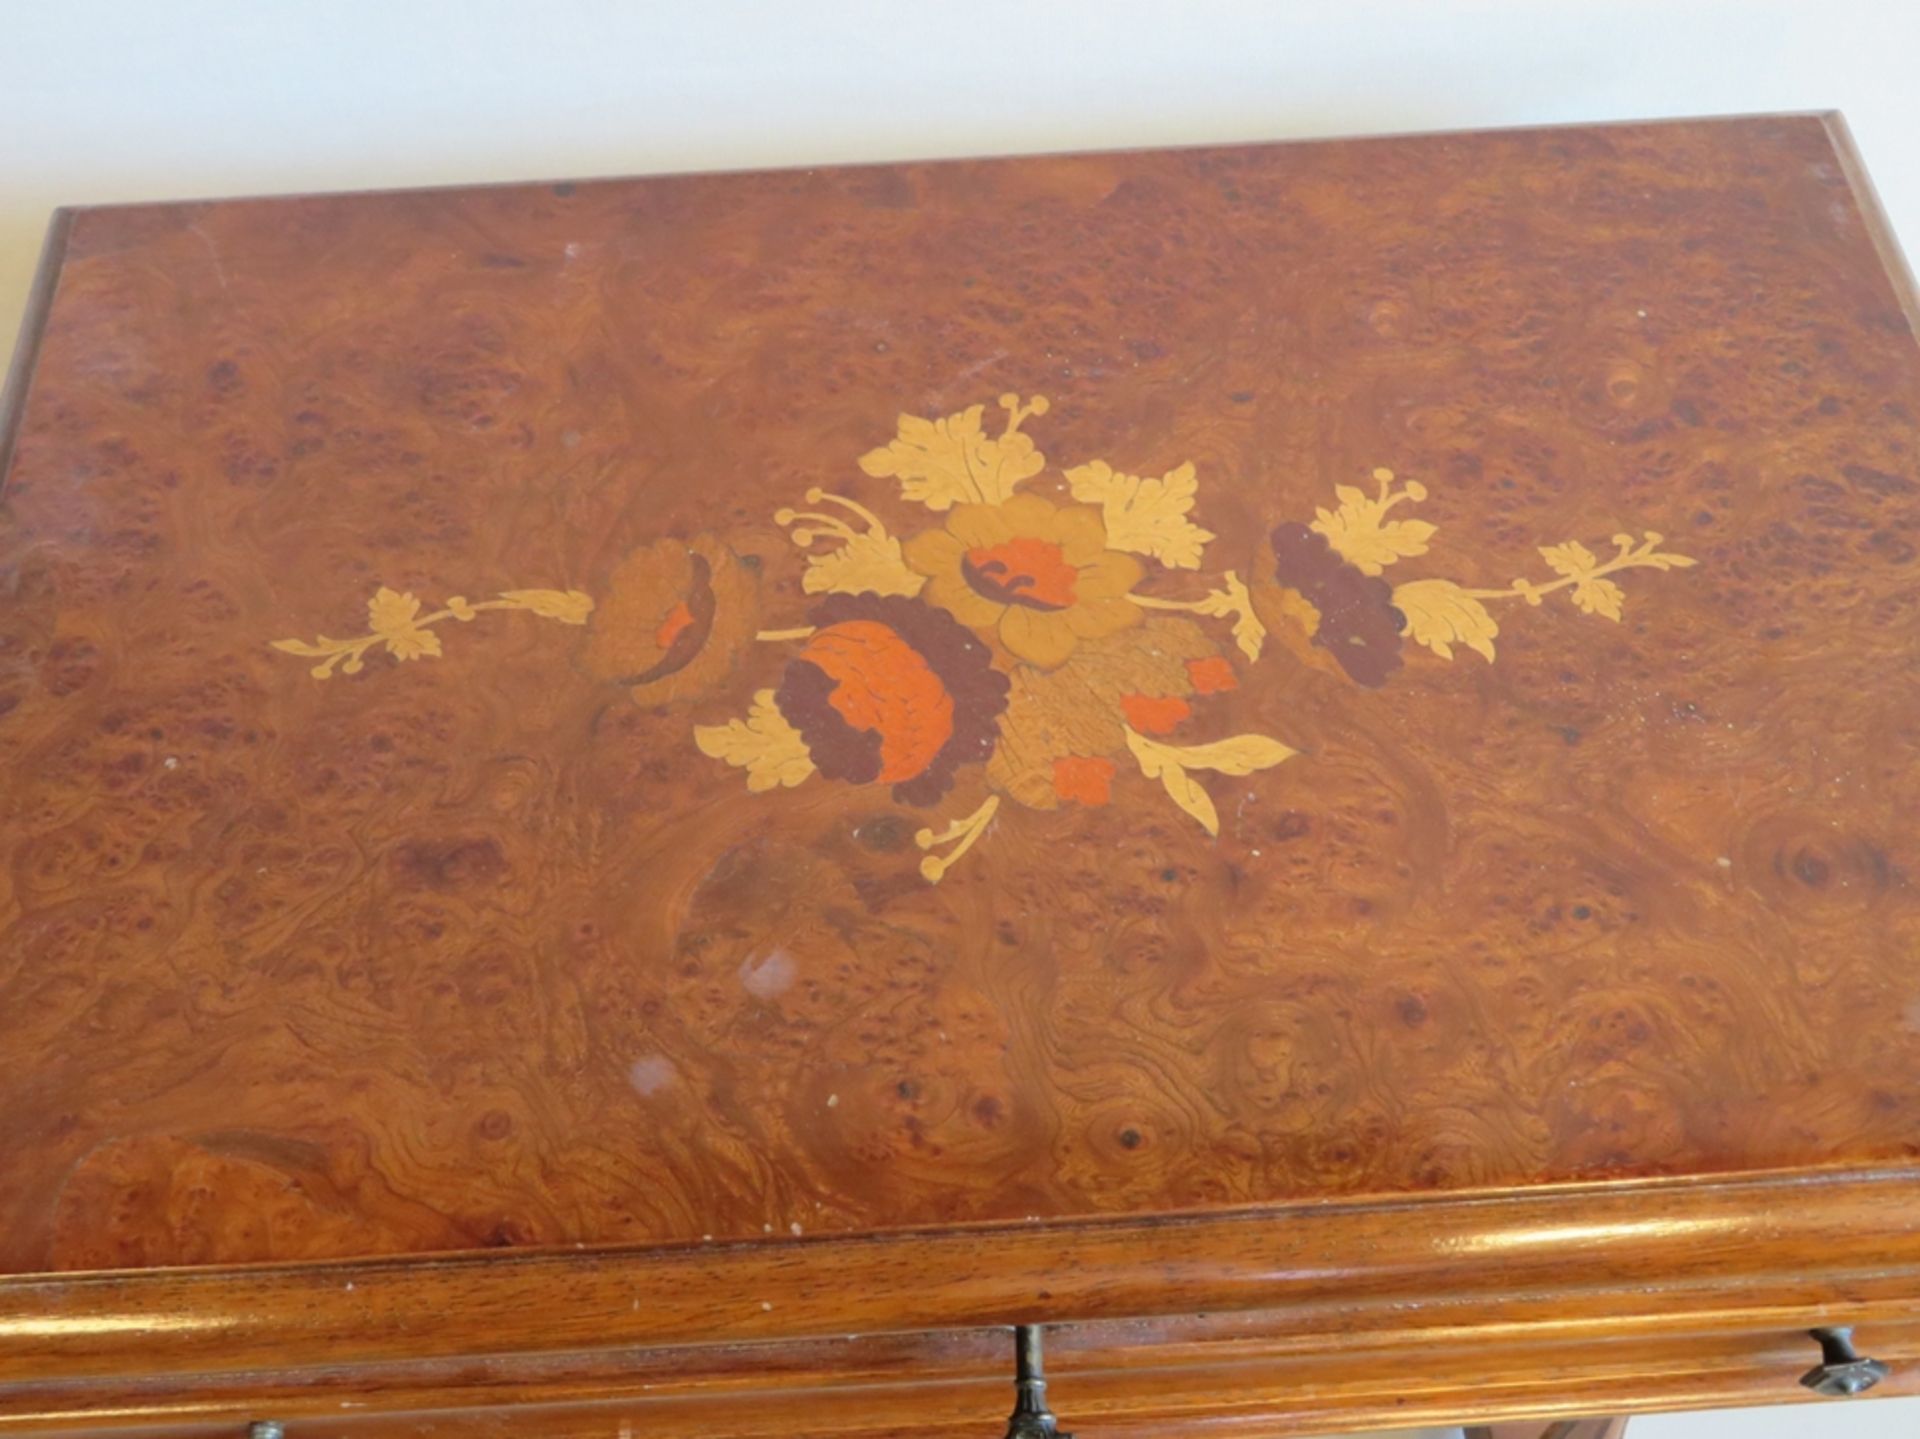 Nähtisch, Stilmöbel, Wurzelholzplatte mit floralen Intarsien, einschübig, Deckel klappbar, 69 x 58 - Image 2 of 2